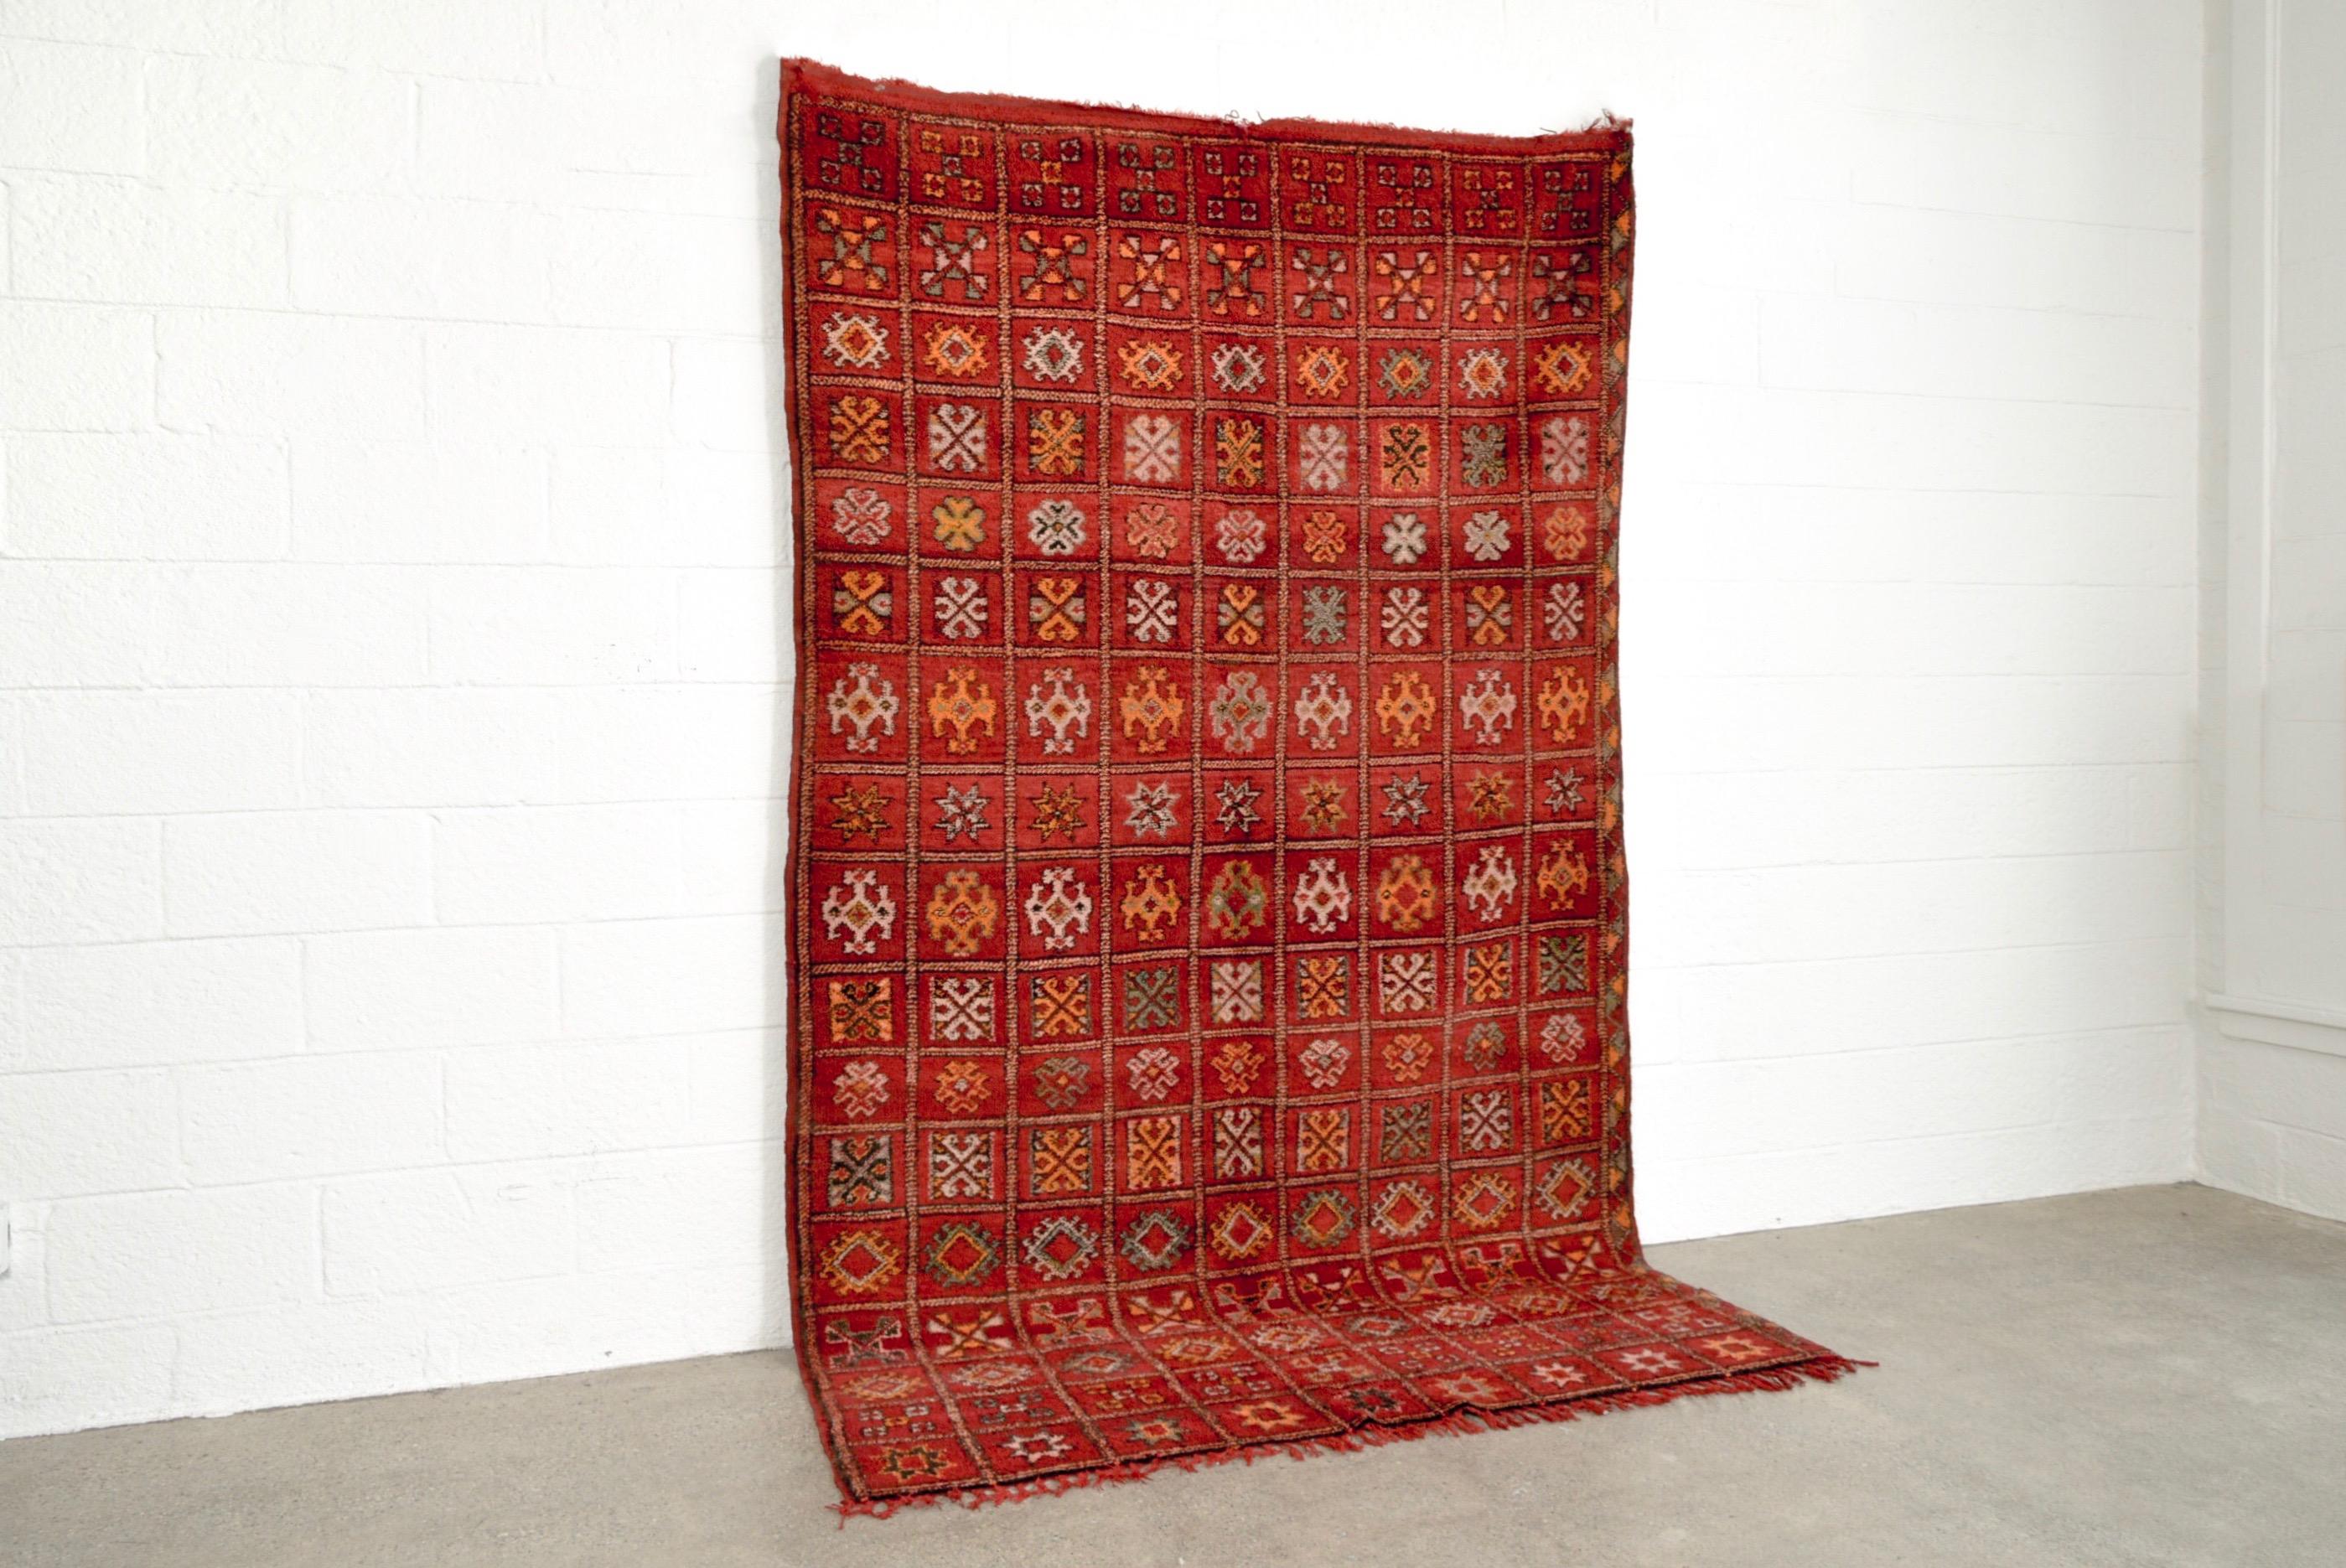 Dieser reiche, handgewebte marokkanische Boujad-Teppich weist ein geometrisches Gesamtmuster auf, das sich aus einem Raster aus verschlungenen Rauten mit kleineren Quadraten, spitzen Sternen, Kreuzen und anderen Berbersymbolen zusammensetzt. Der